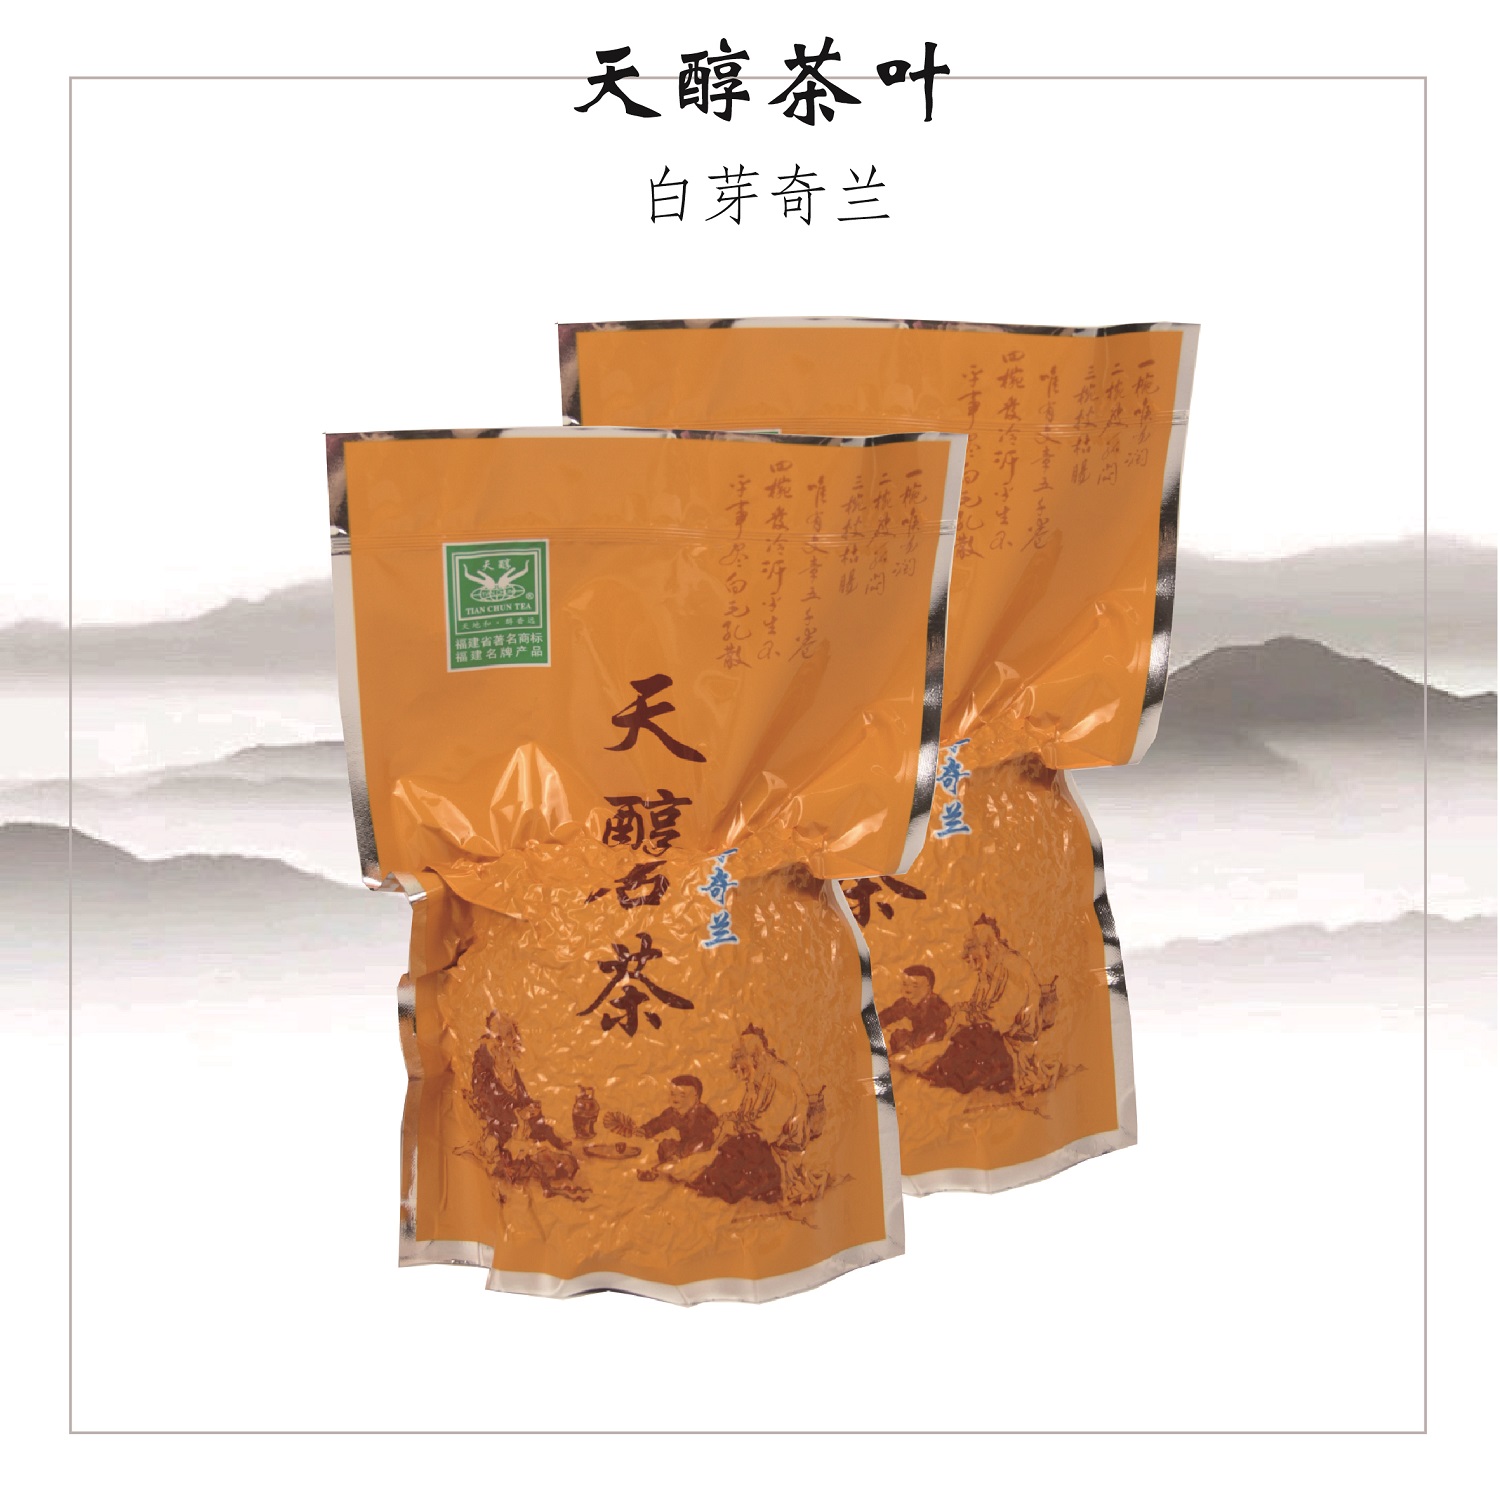 橙色袋装 | 福建平和特产高山茶叶乌龙手工茶奇兰茶实惠装500g